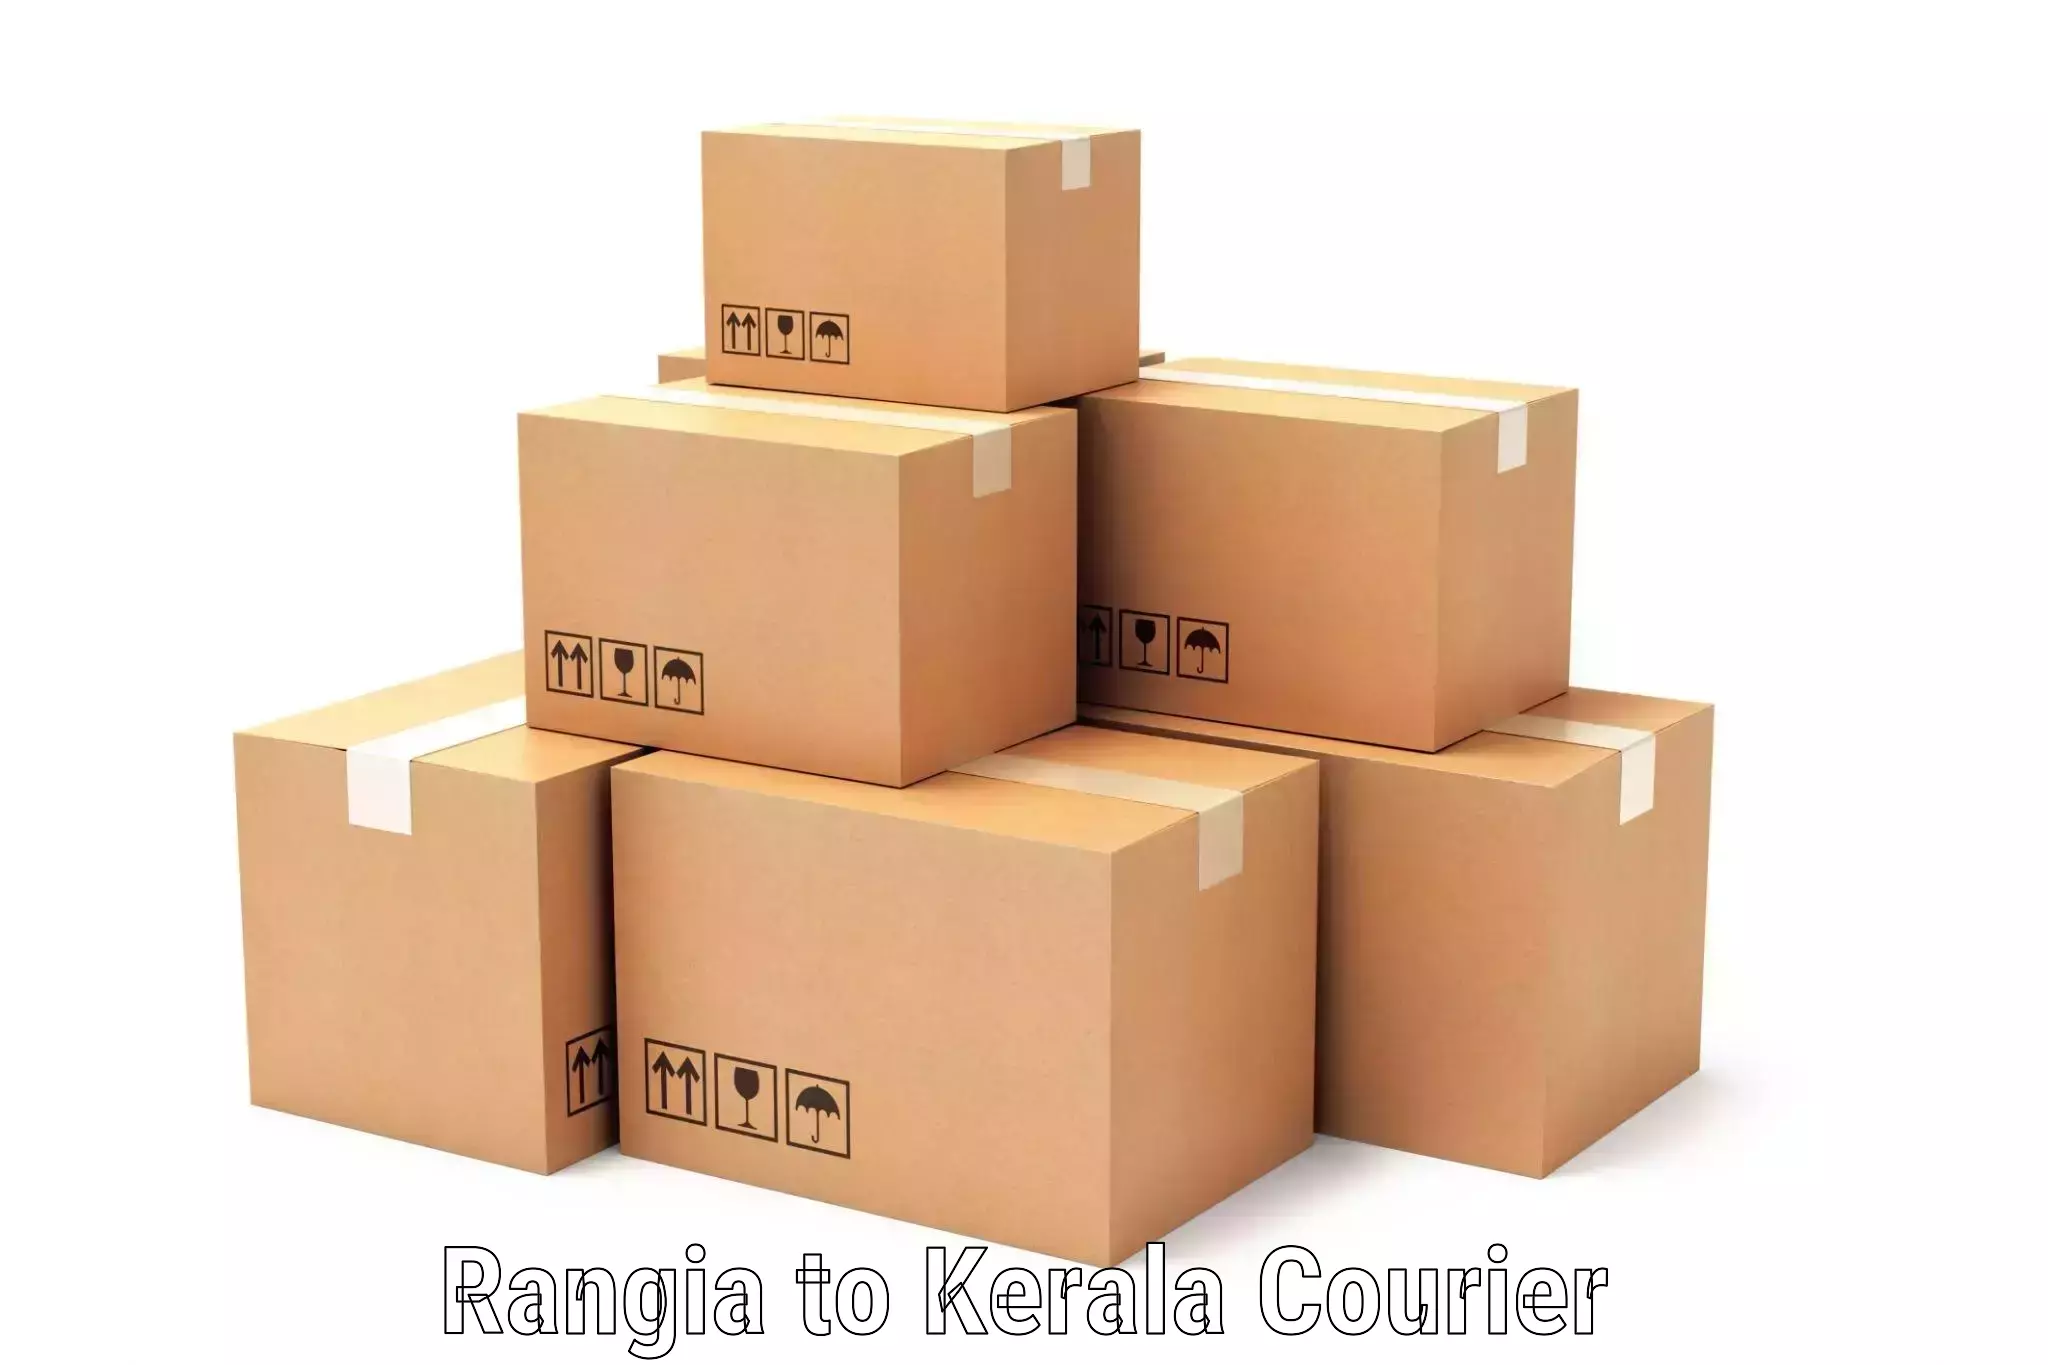 Easy return solutions Rangia to Kuthiathode